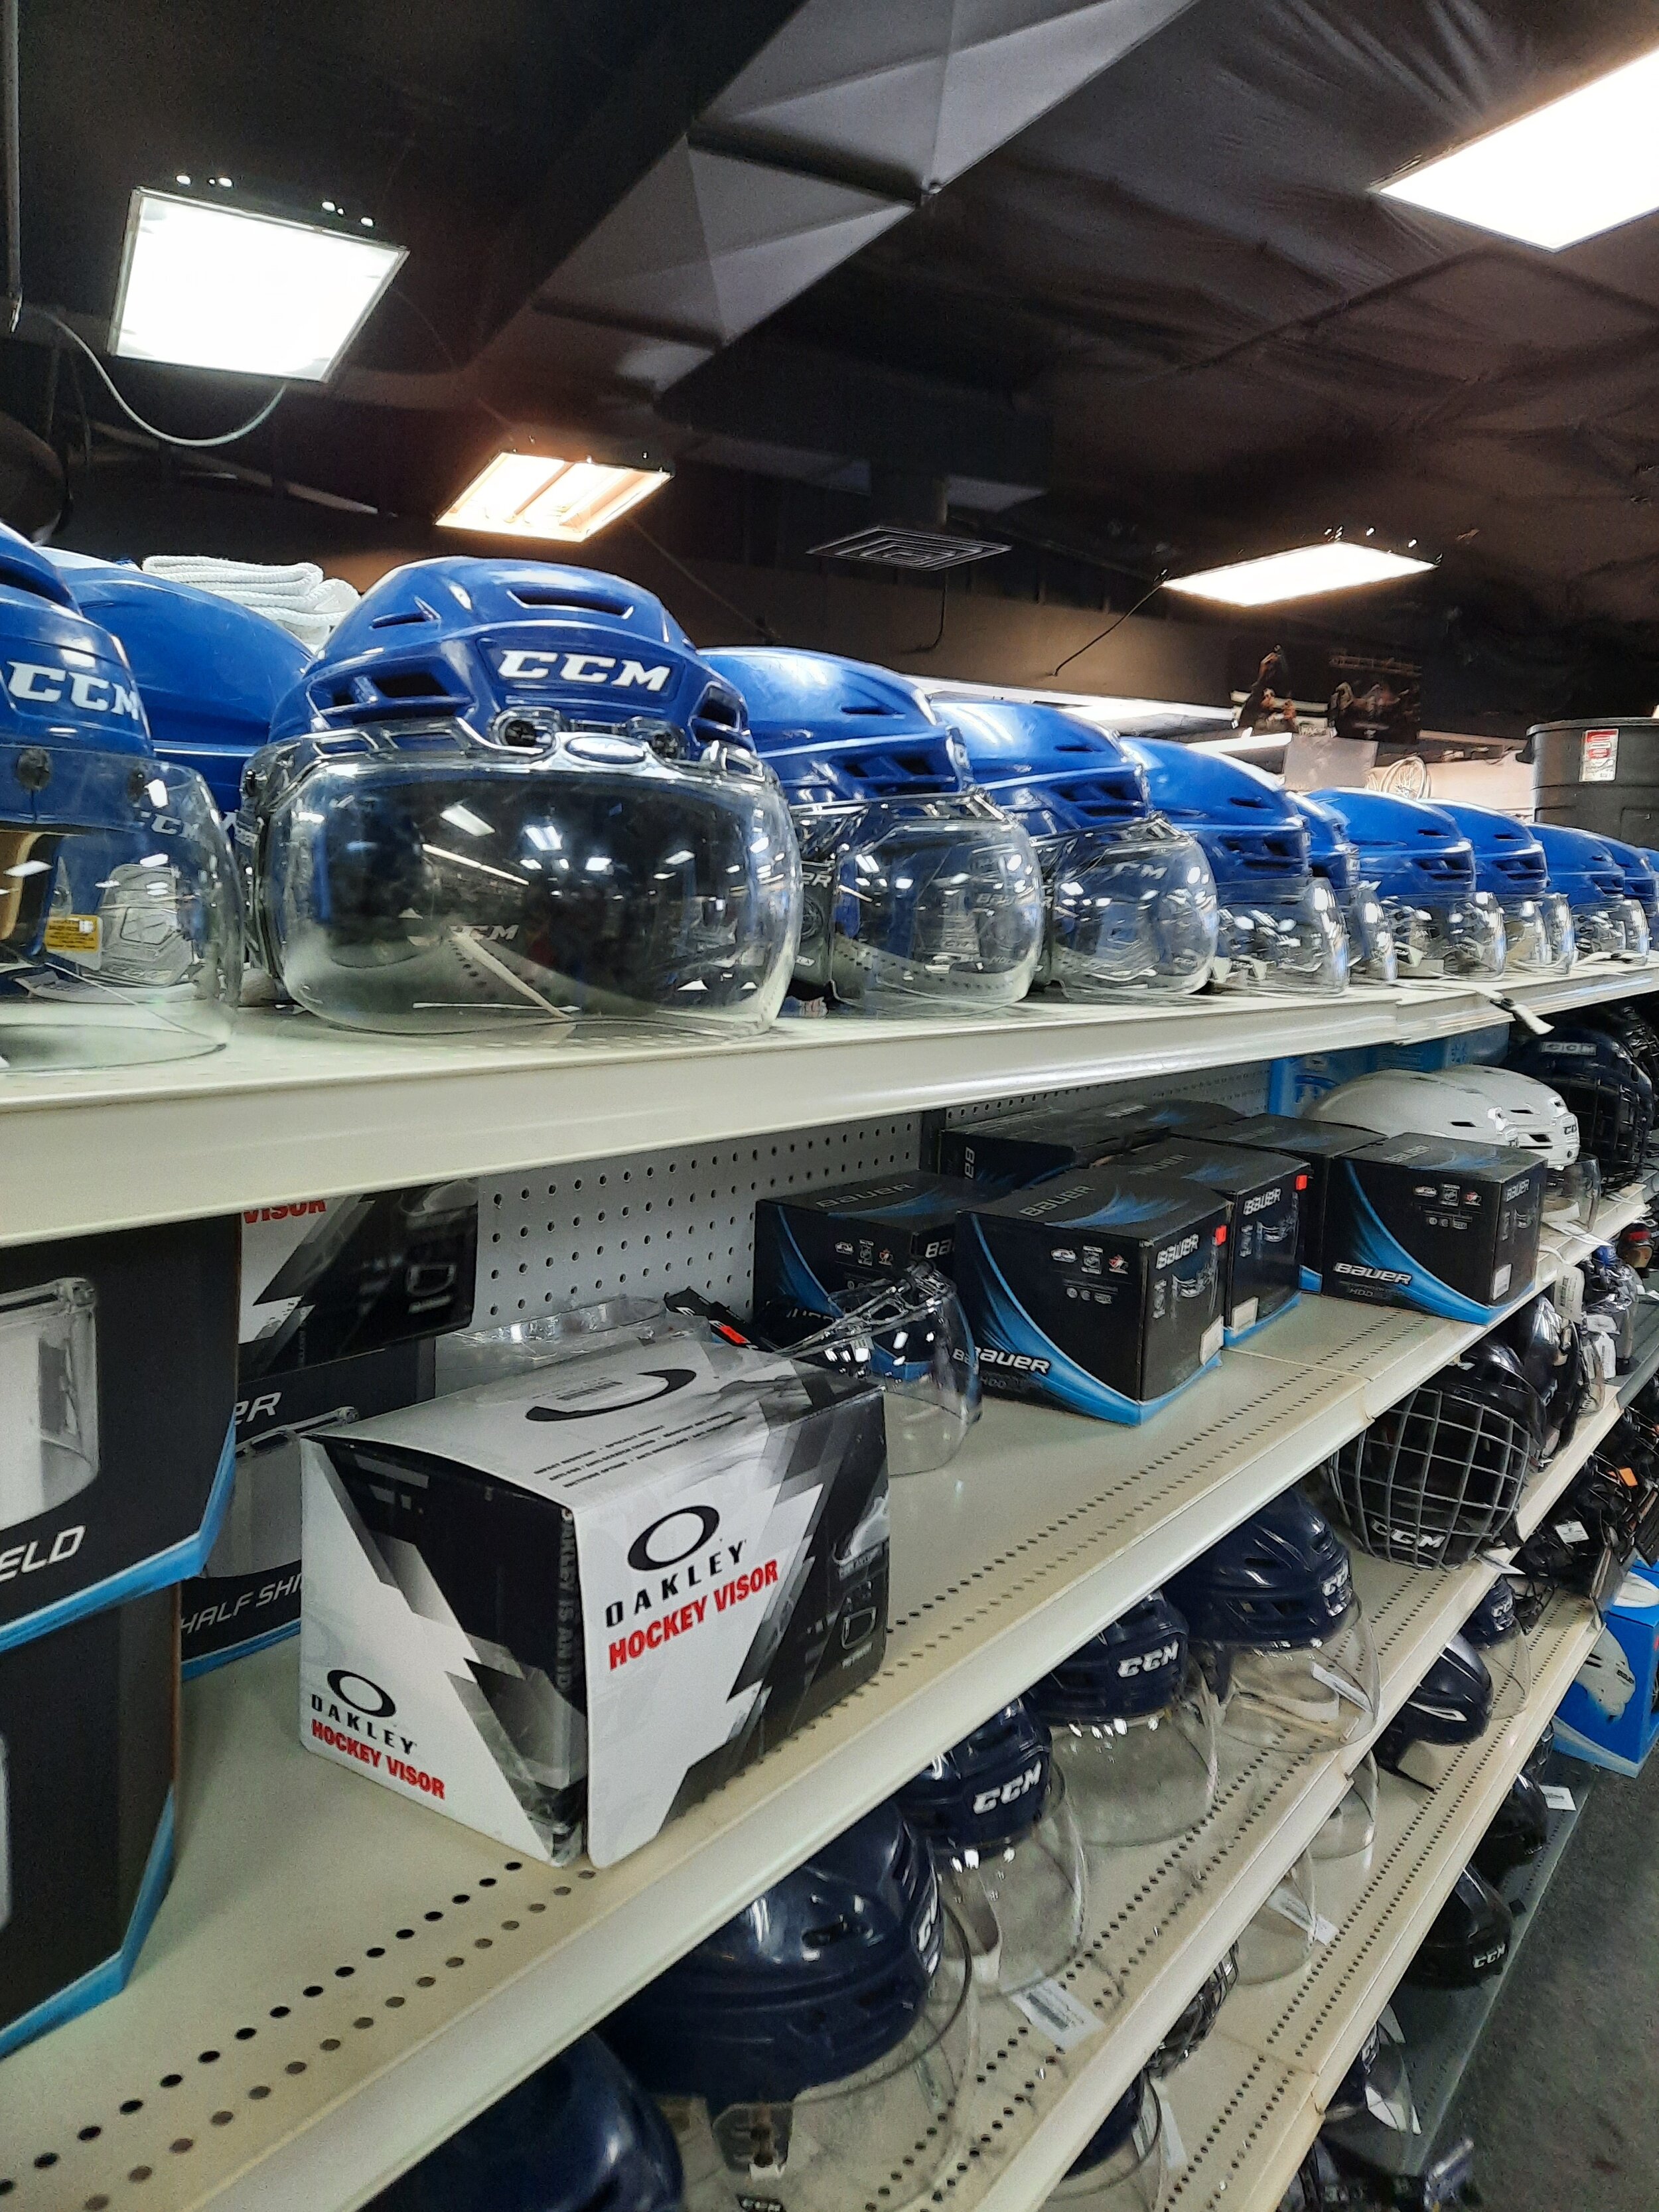 CCM helmets Visor Saskatoon Top Shelf Sports.jpg